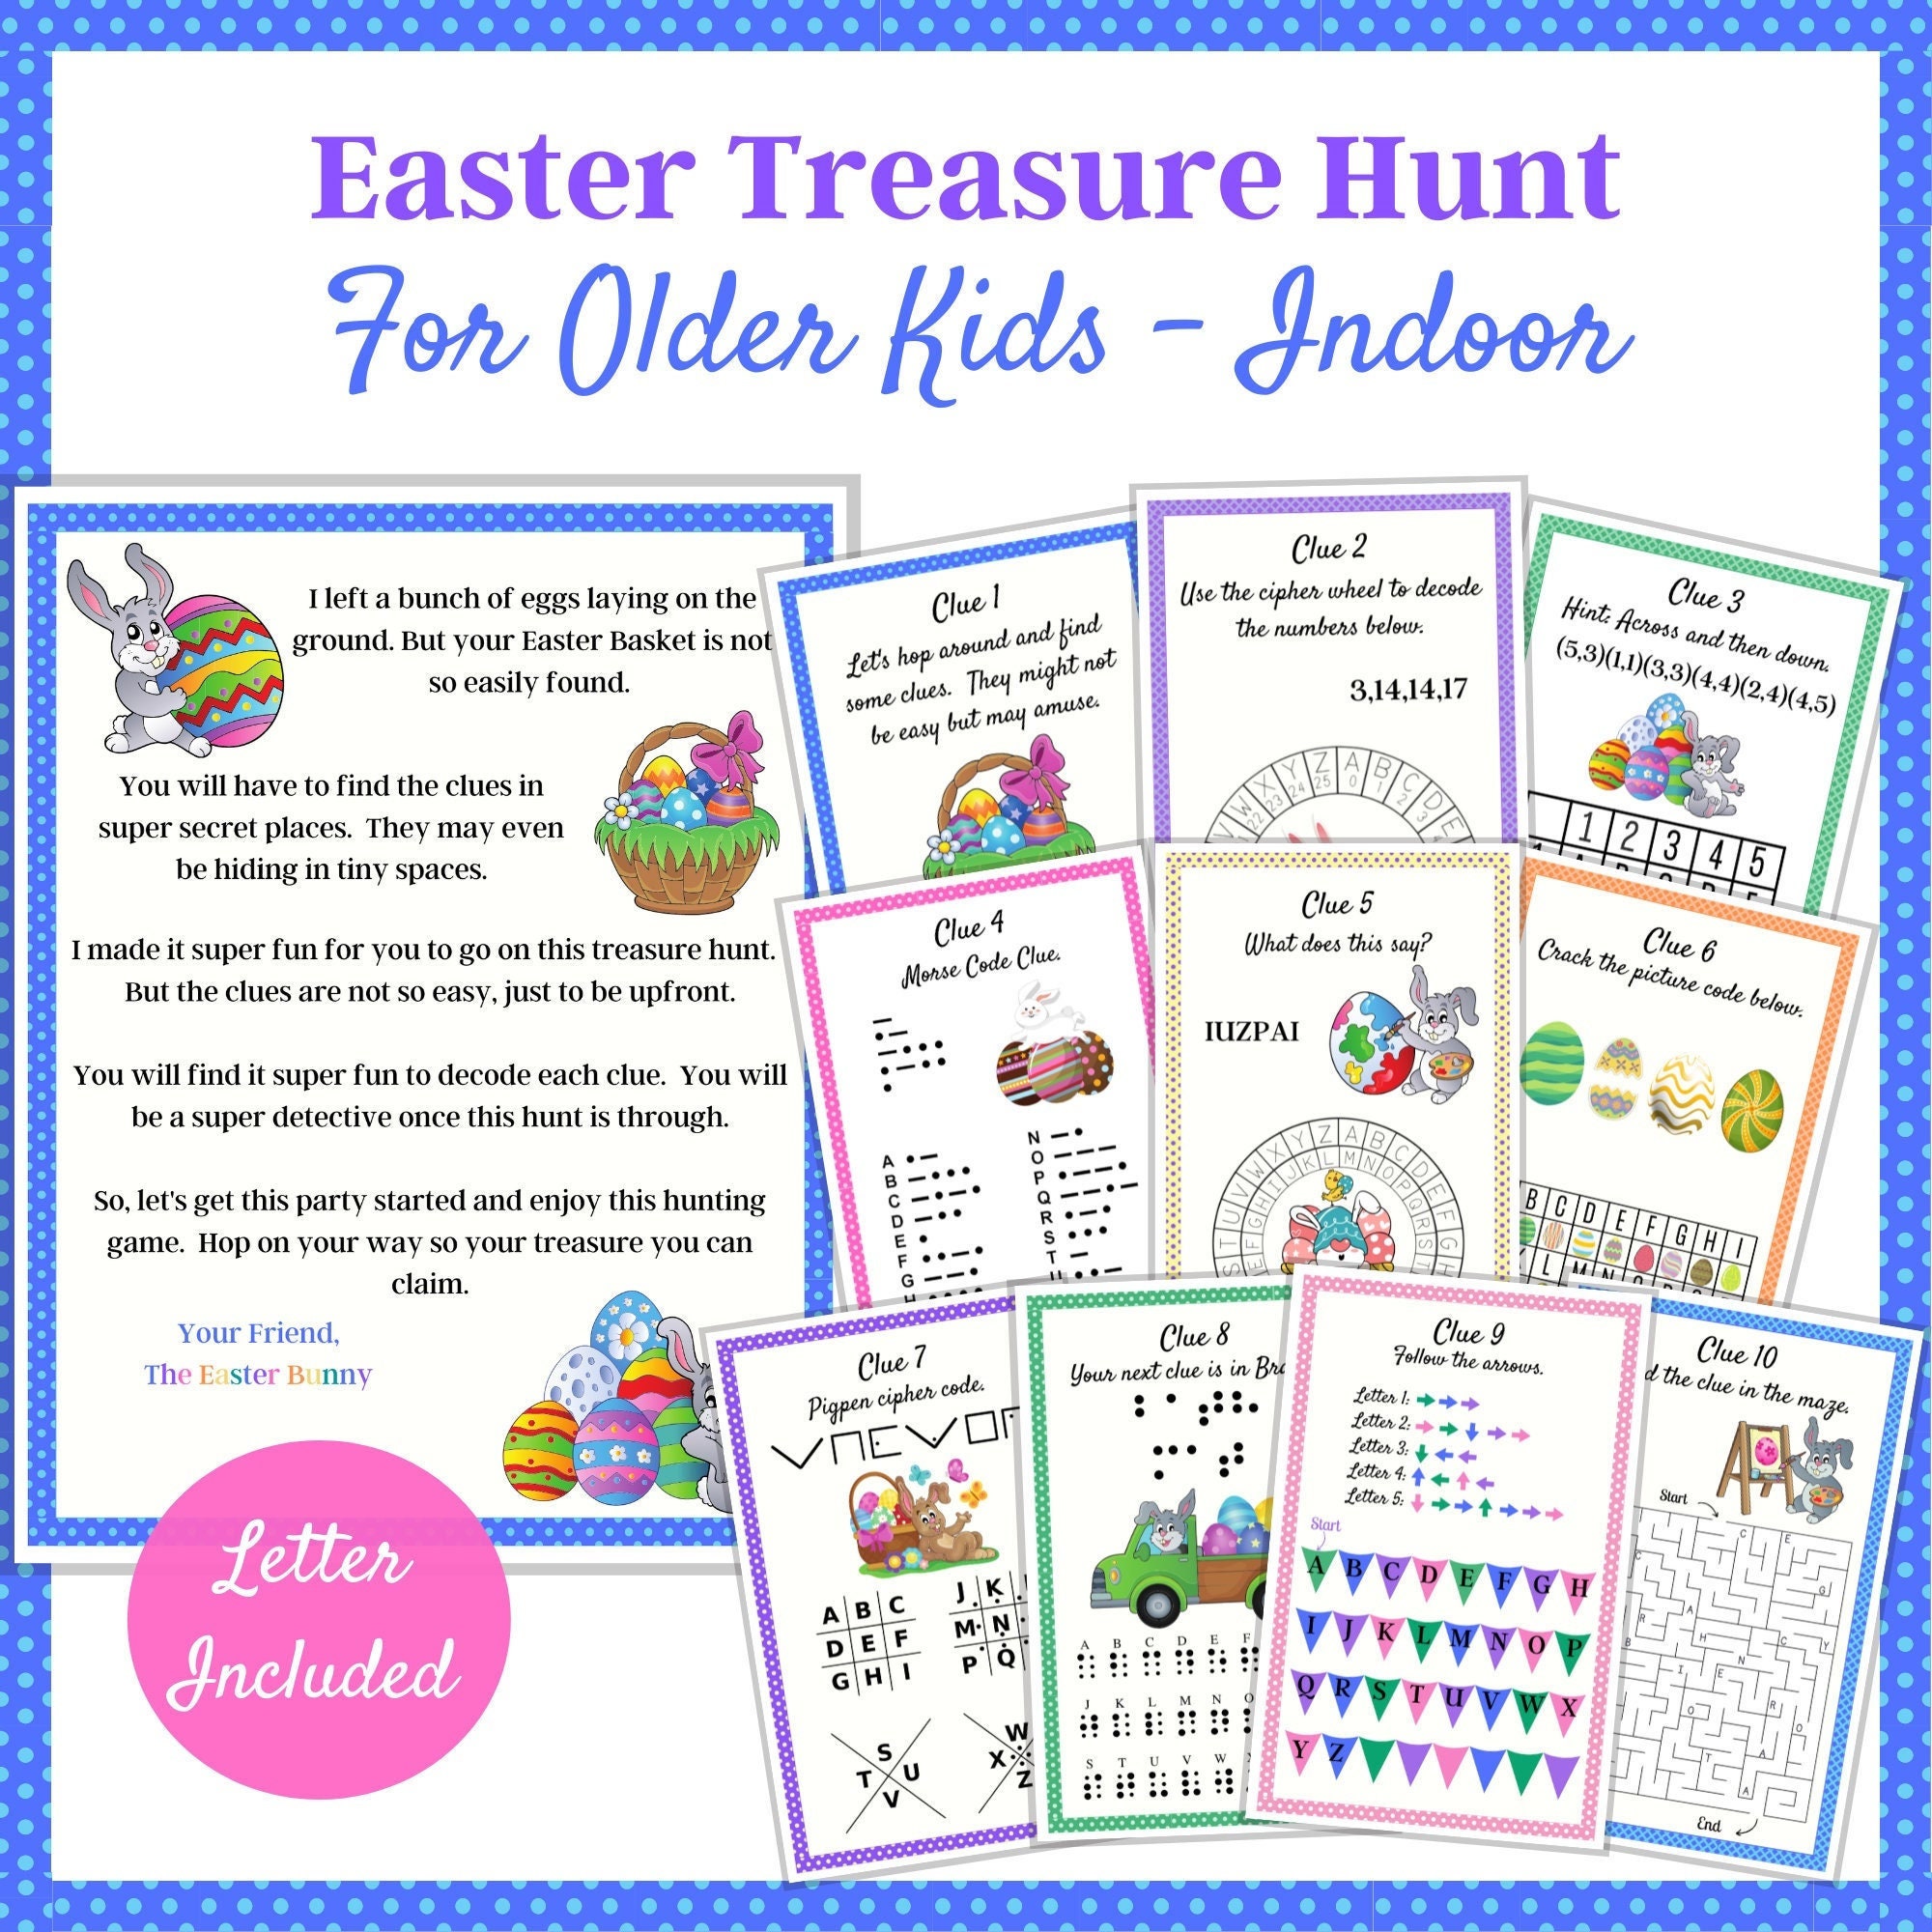 Easter Treasure Hunt Easter Bunny Letter Indoor Scavenger - Etsy